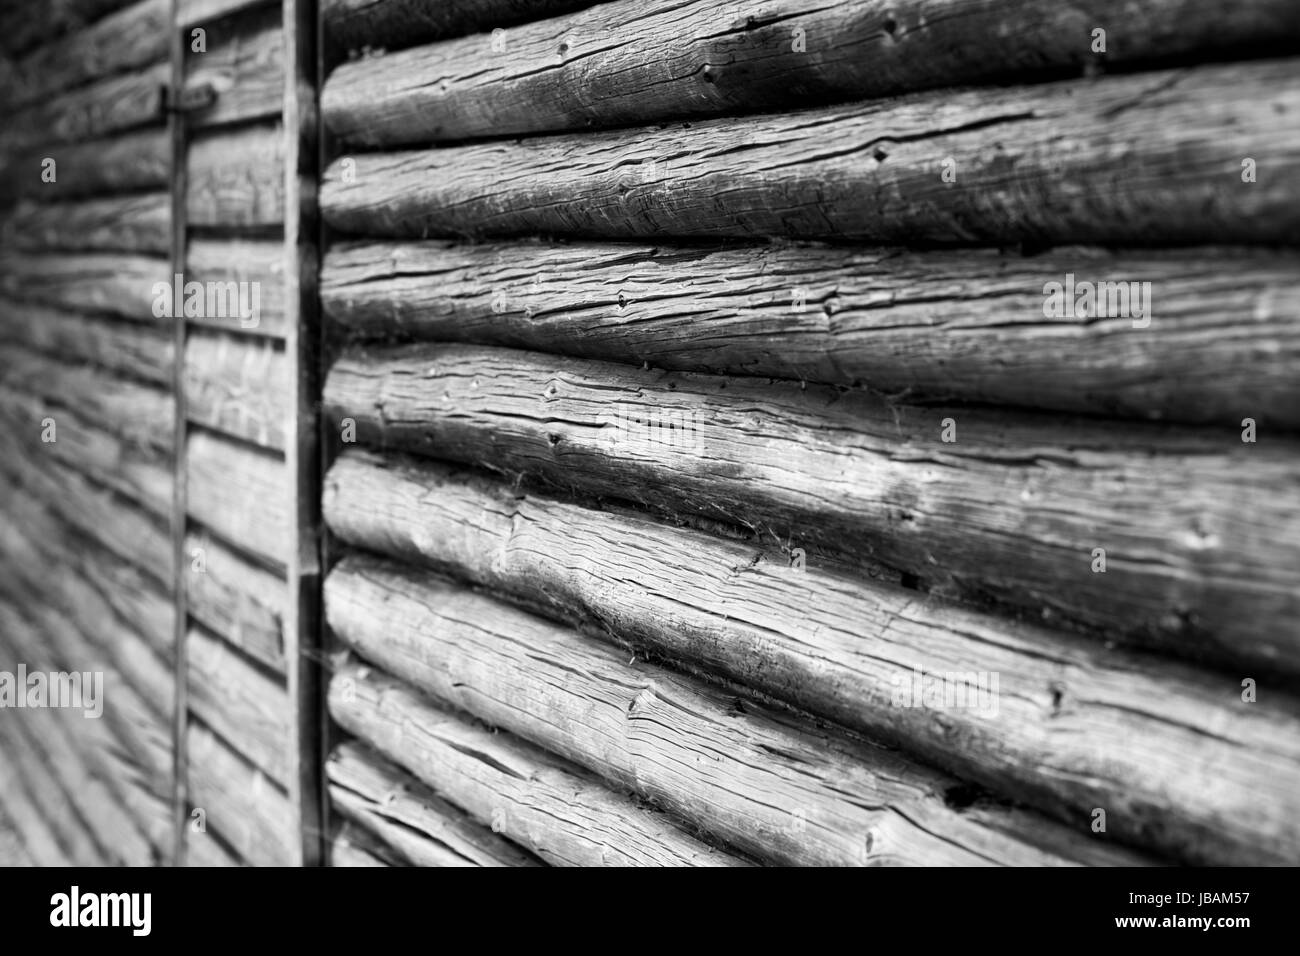 Holzstruktur, Chiemgau, Bayern, Germany Stock Photo